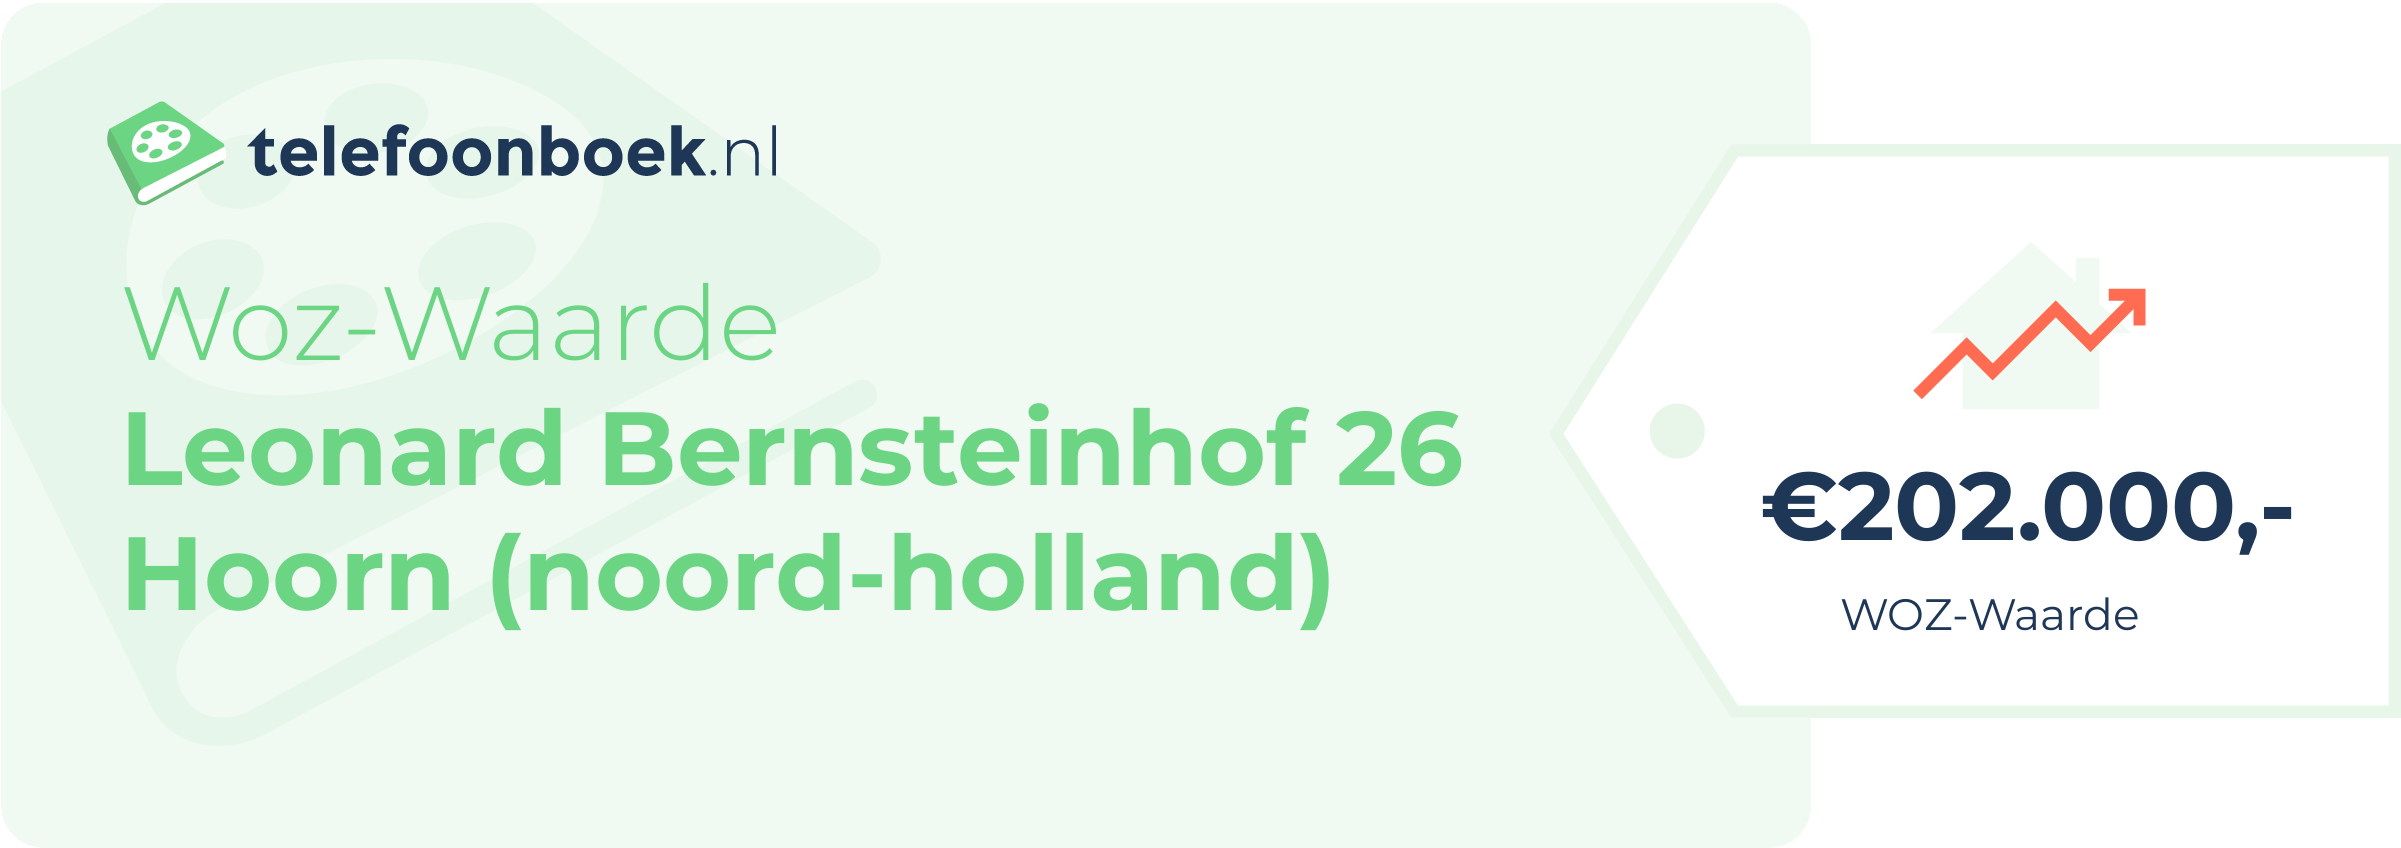 WOZ-waarde Leonard Bernsteinhof 26 Hoorn (Noord-Holland)